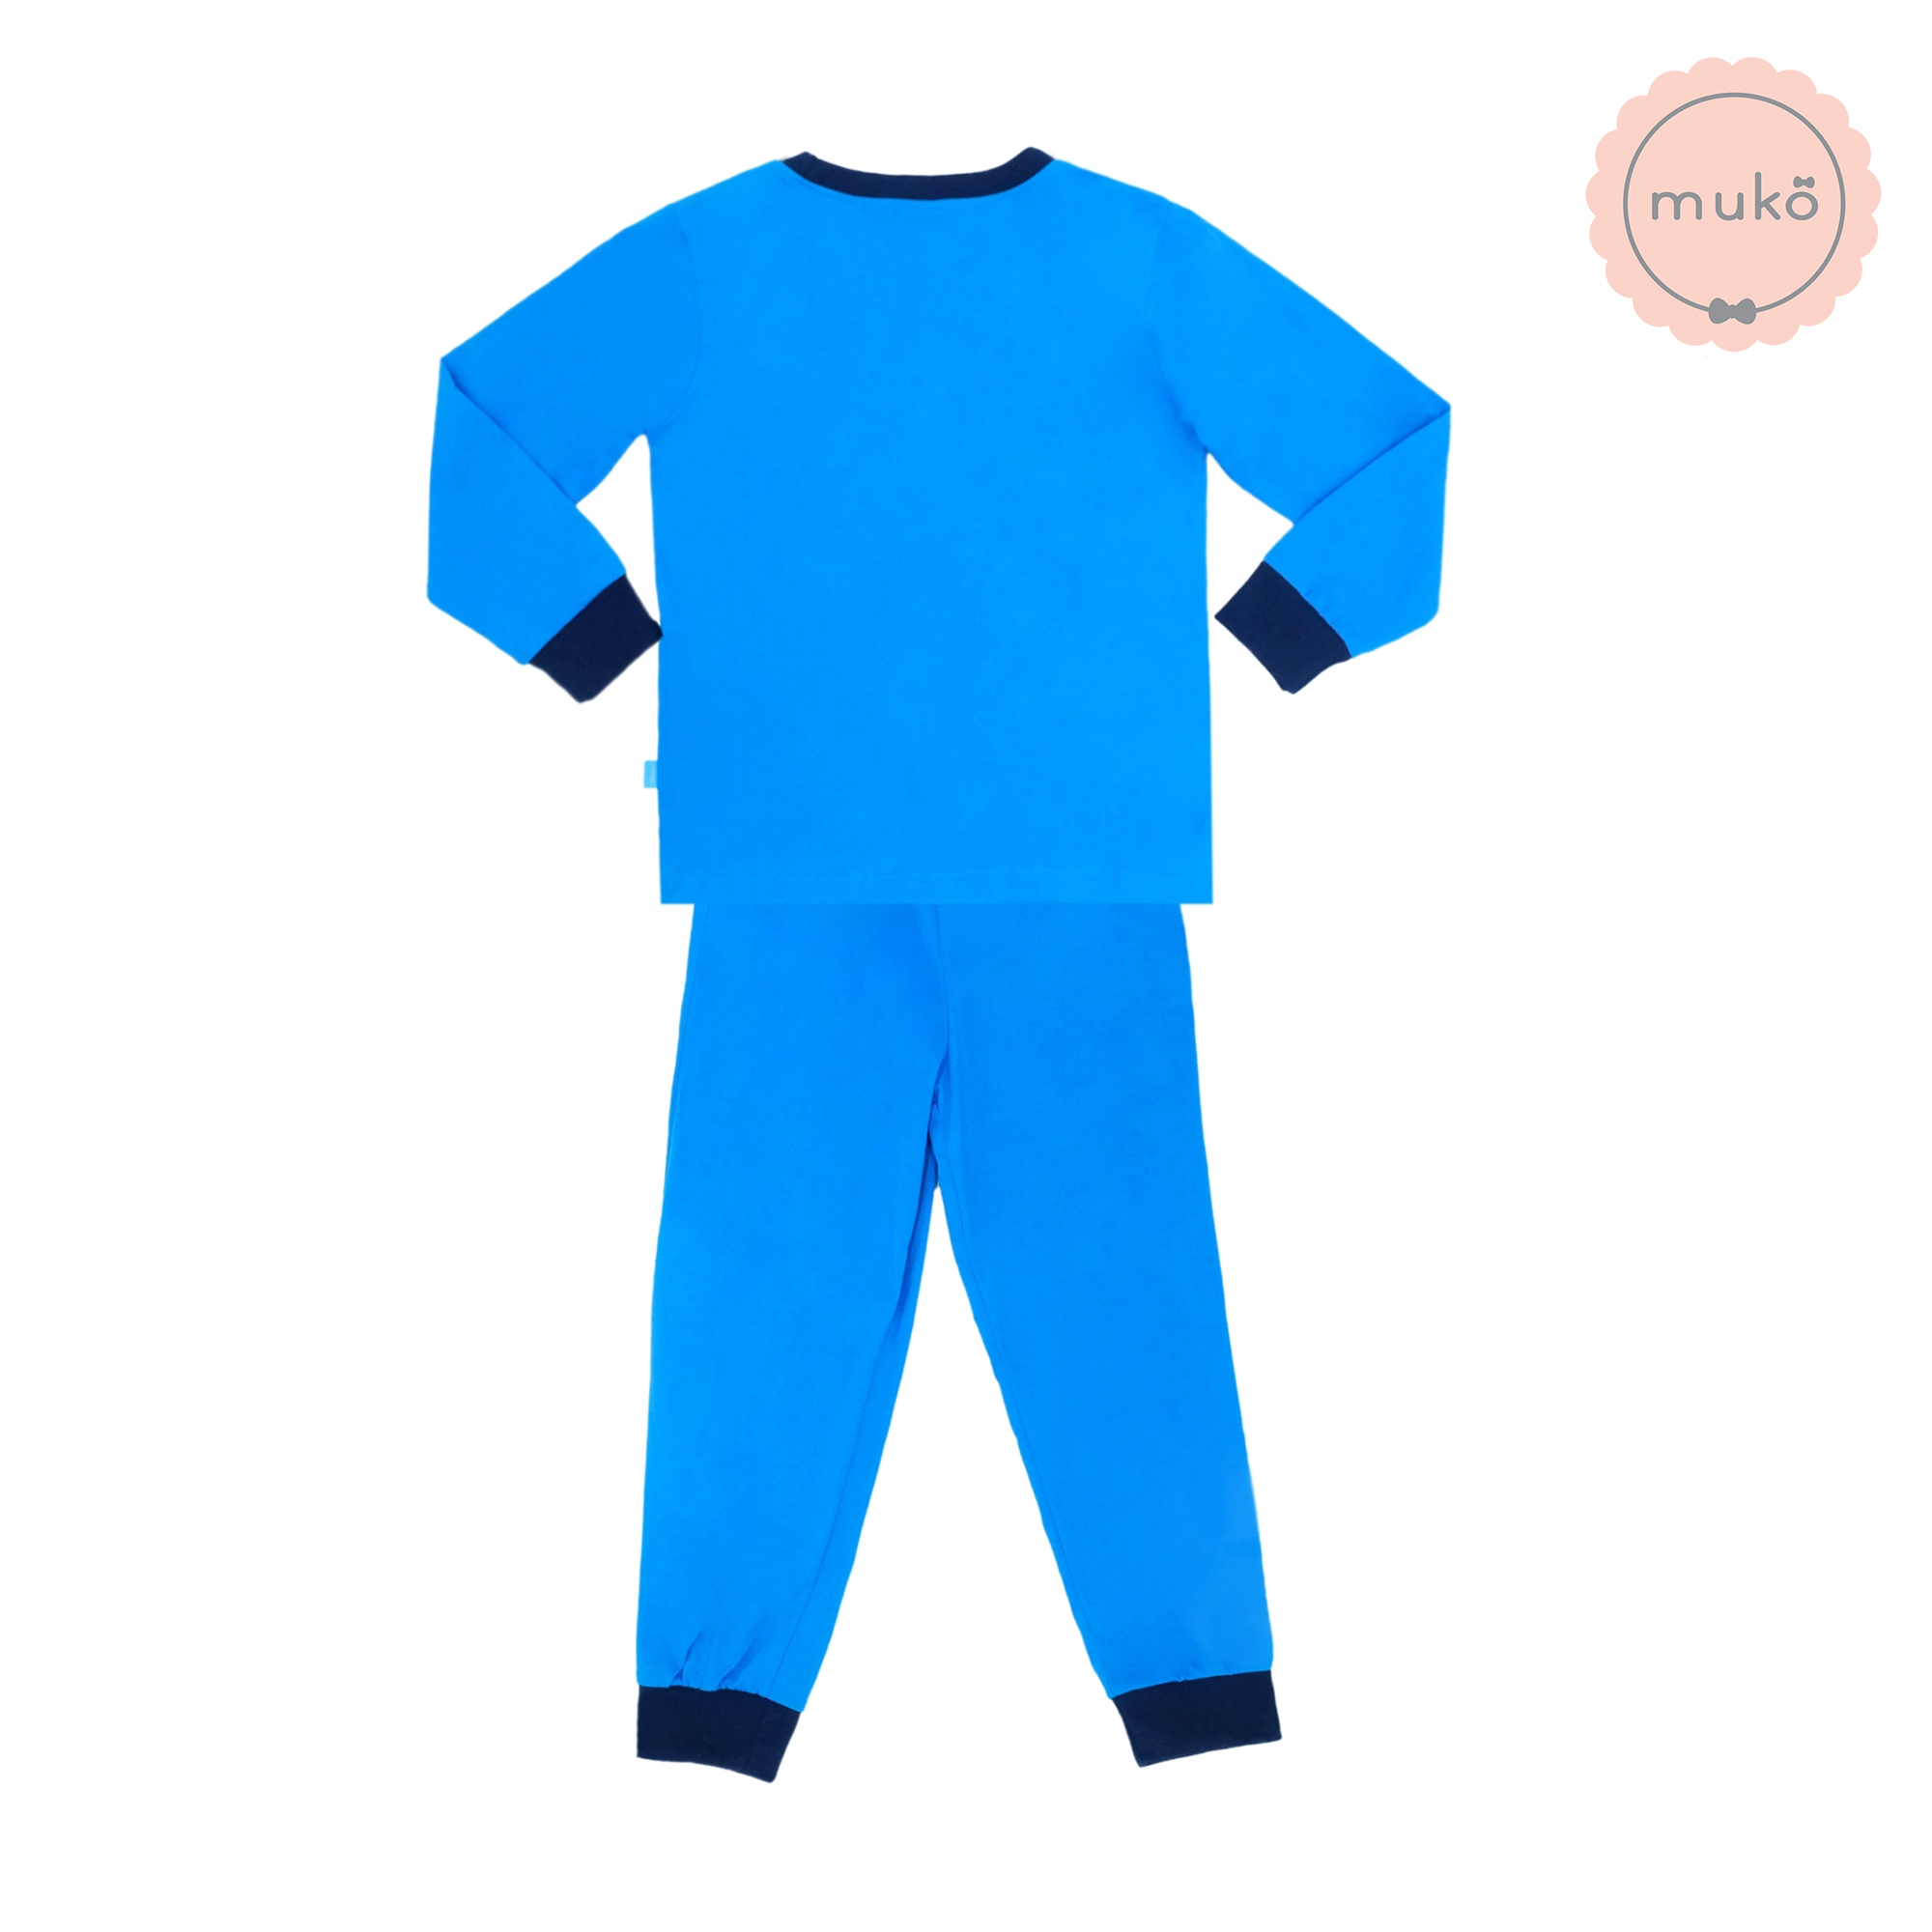 ชุดเด็ก 6-7 ขวบ แขนยาว-ขายาว (Size L) DLS127-690-XL-Blue L ลาย สติช Stitch สีฟ้า (ฟ้าทั้งชุด)